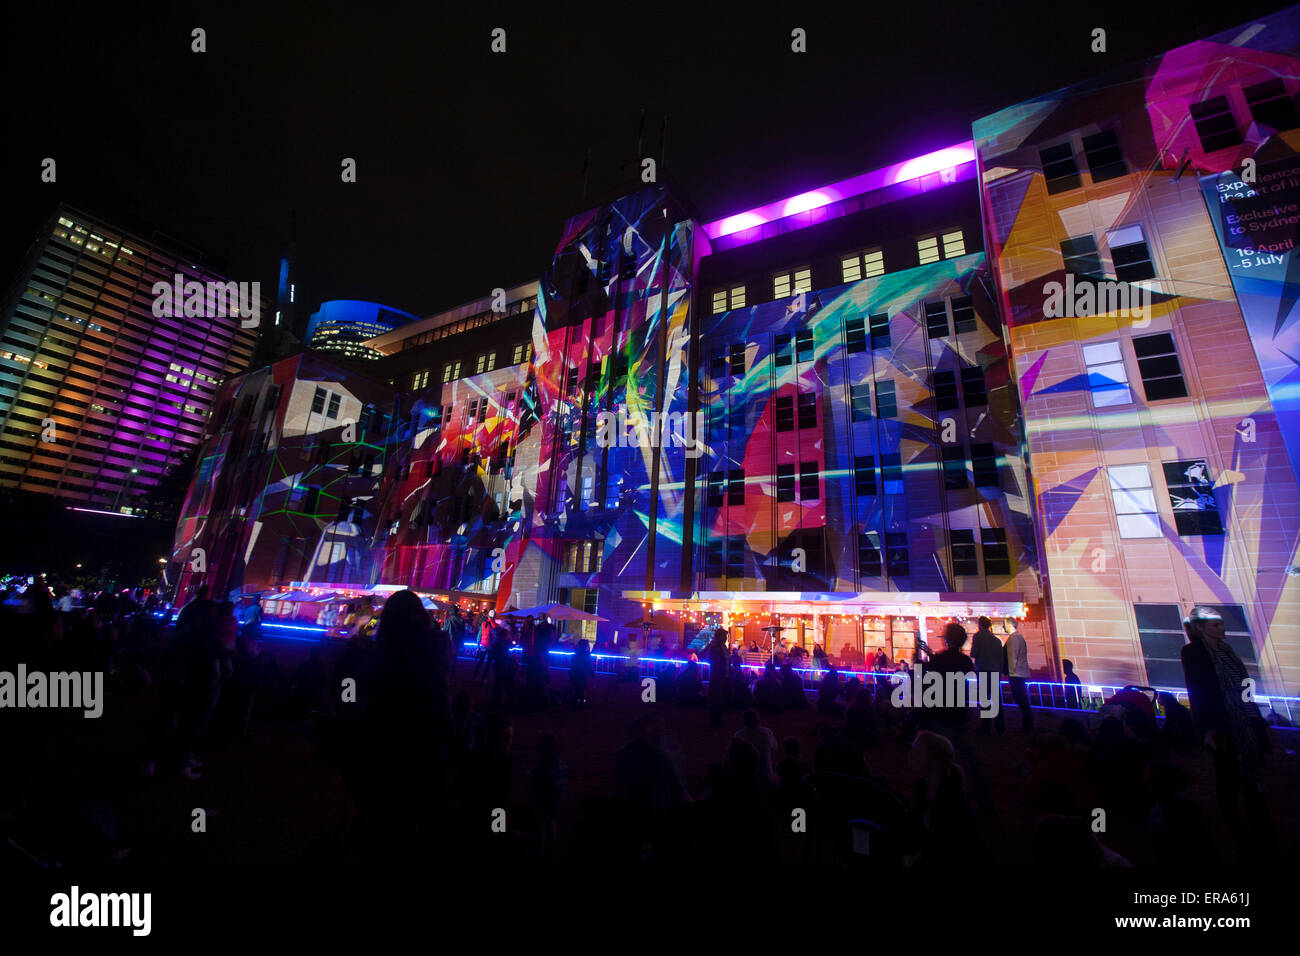 Vivid Sydney 2015 läuft Musik, Licht und Ideen-Festival vom 22. Mai 2015 bis 8 Juni in einer Reihe von Sydney Bezirke. Klang und Farbe Maschinen, die ändern ihre Farbe und Form durch 3D Mapping, schafft Künstler Rebecca Baumann und Danny Rose mechanisiert Farbe Assemblage. Stockfoto